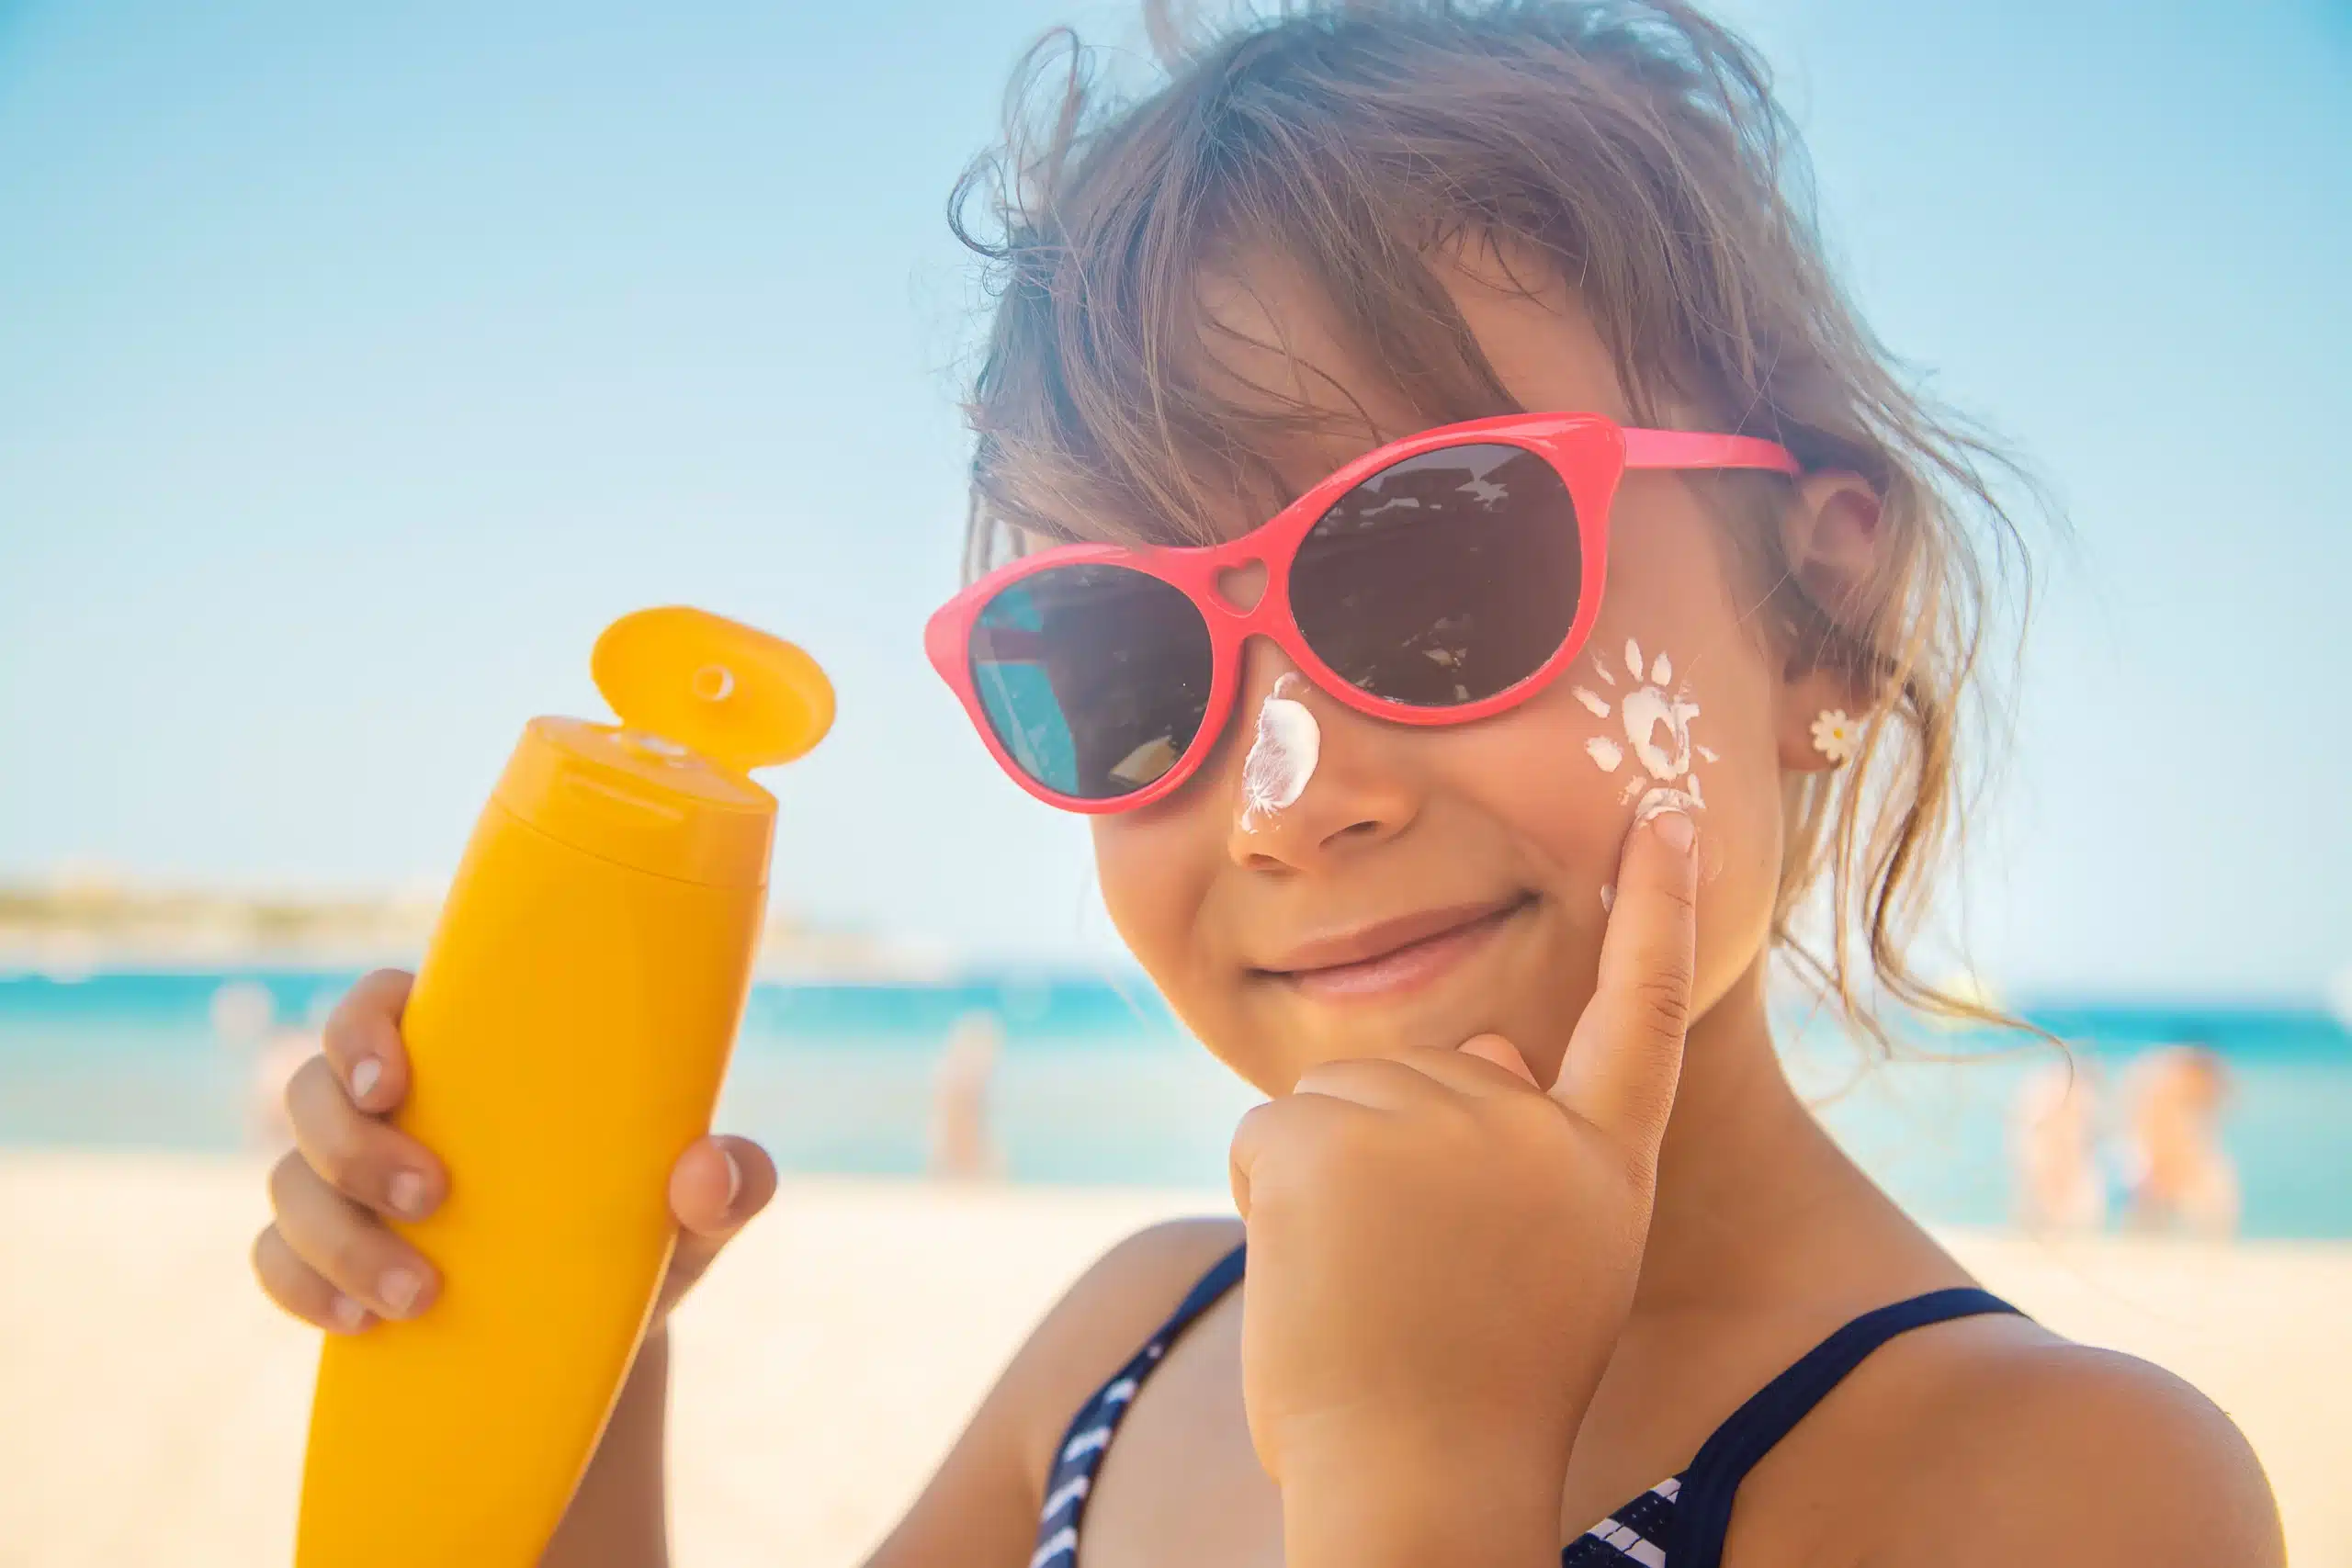 Dziewczynka na plaży, która smaruje się kremem do opalania po twarzy.